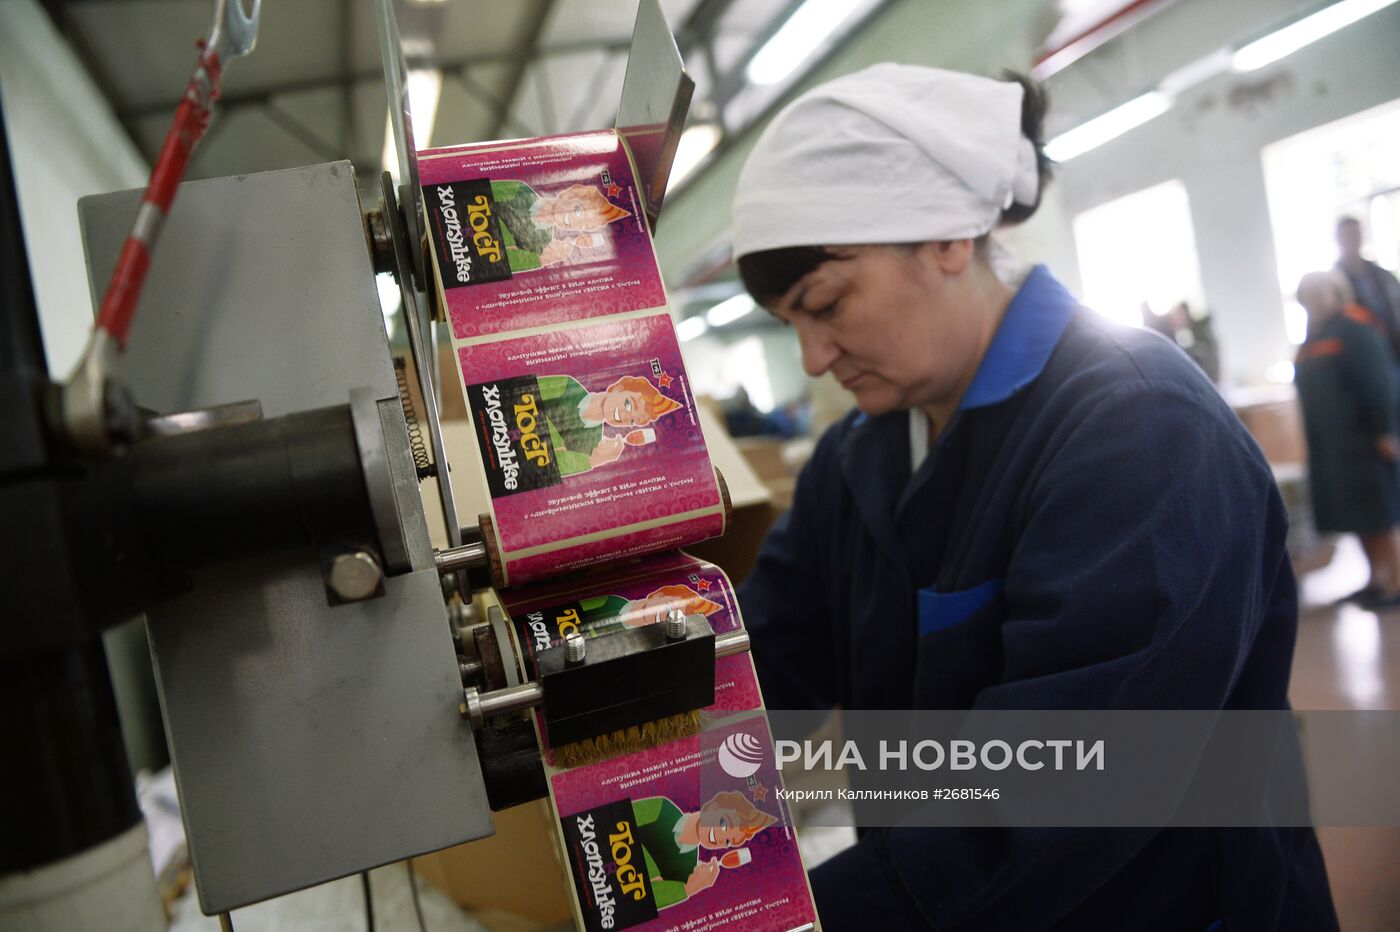 Производство пиротехники в Московской области